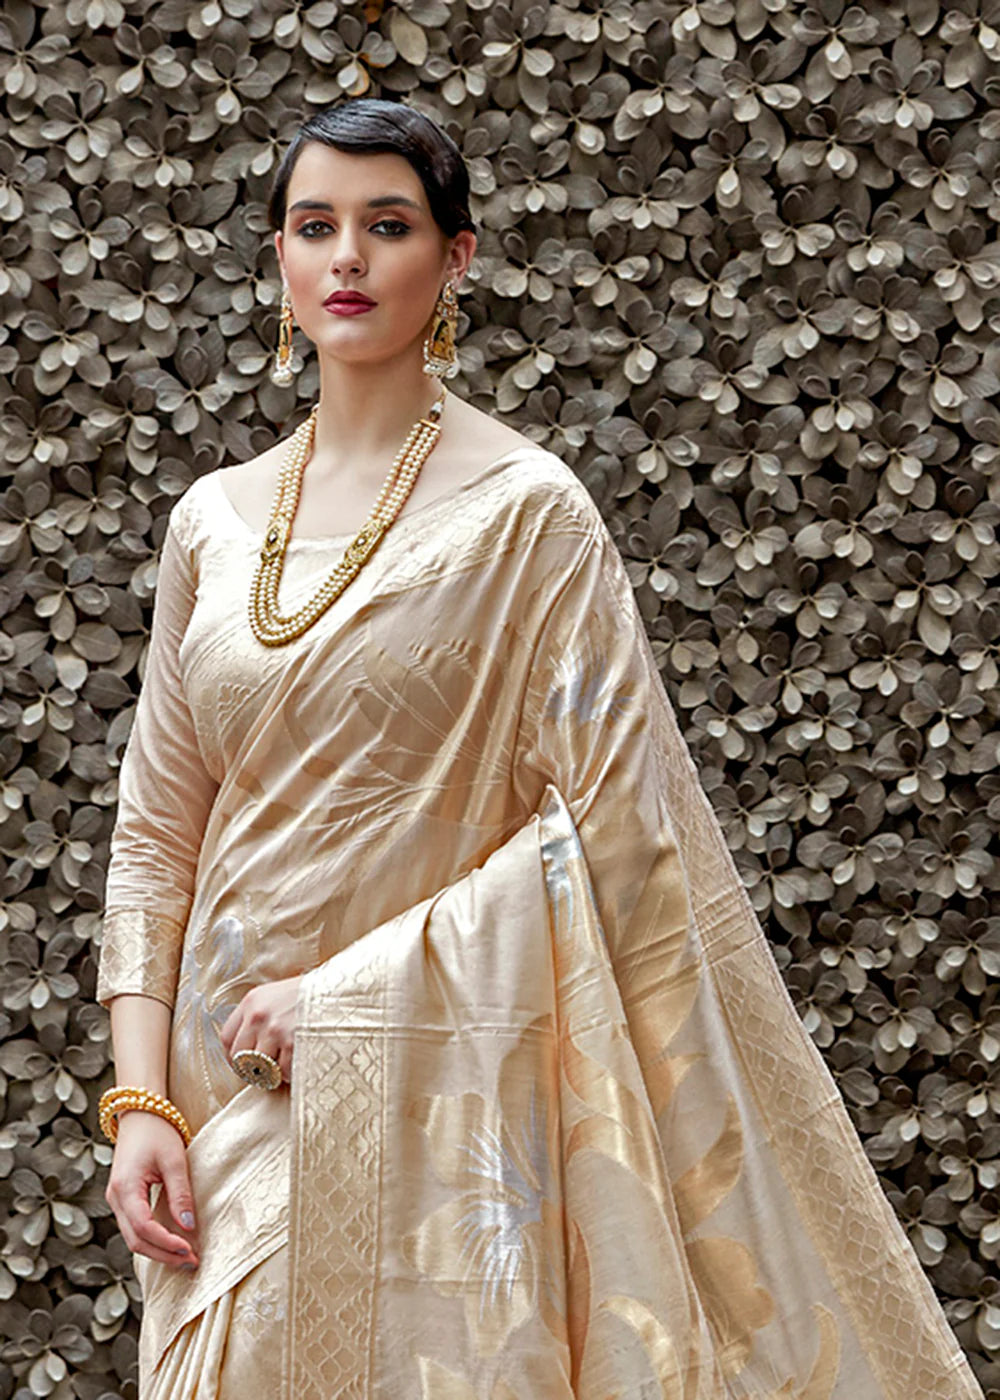 Exquisite Ivory and Gold Zari Work Banarasi Saree